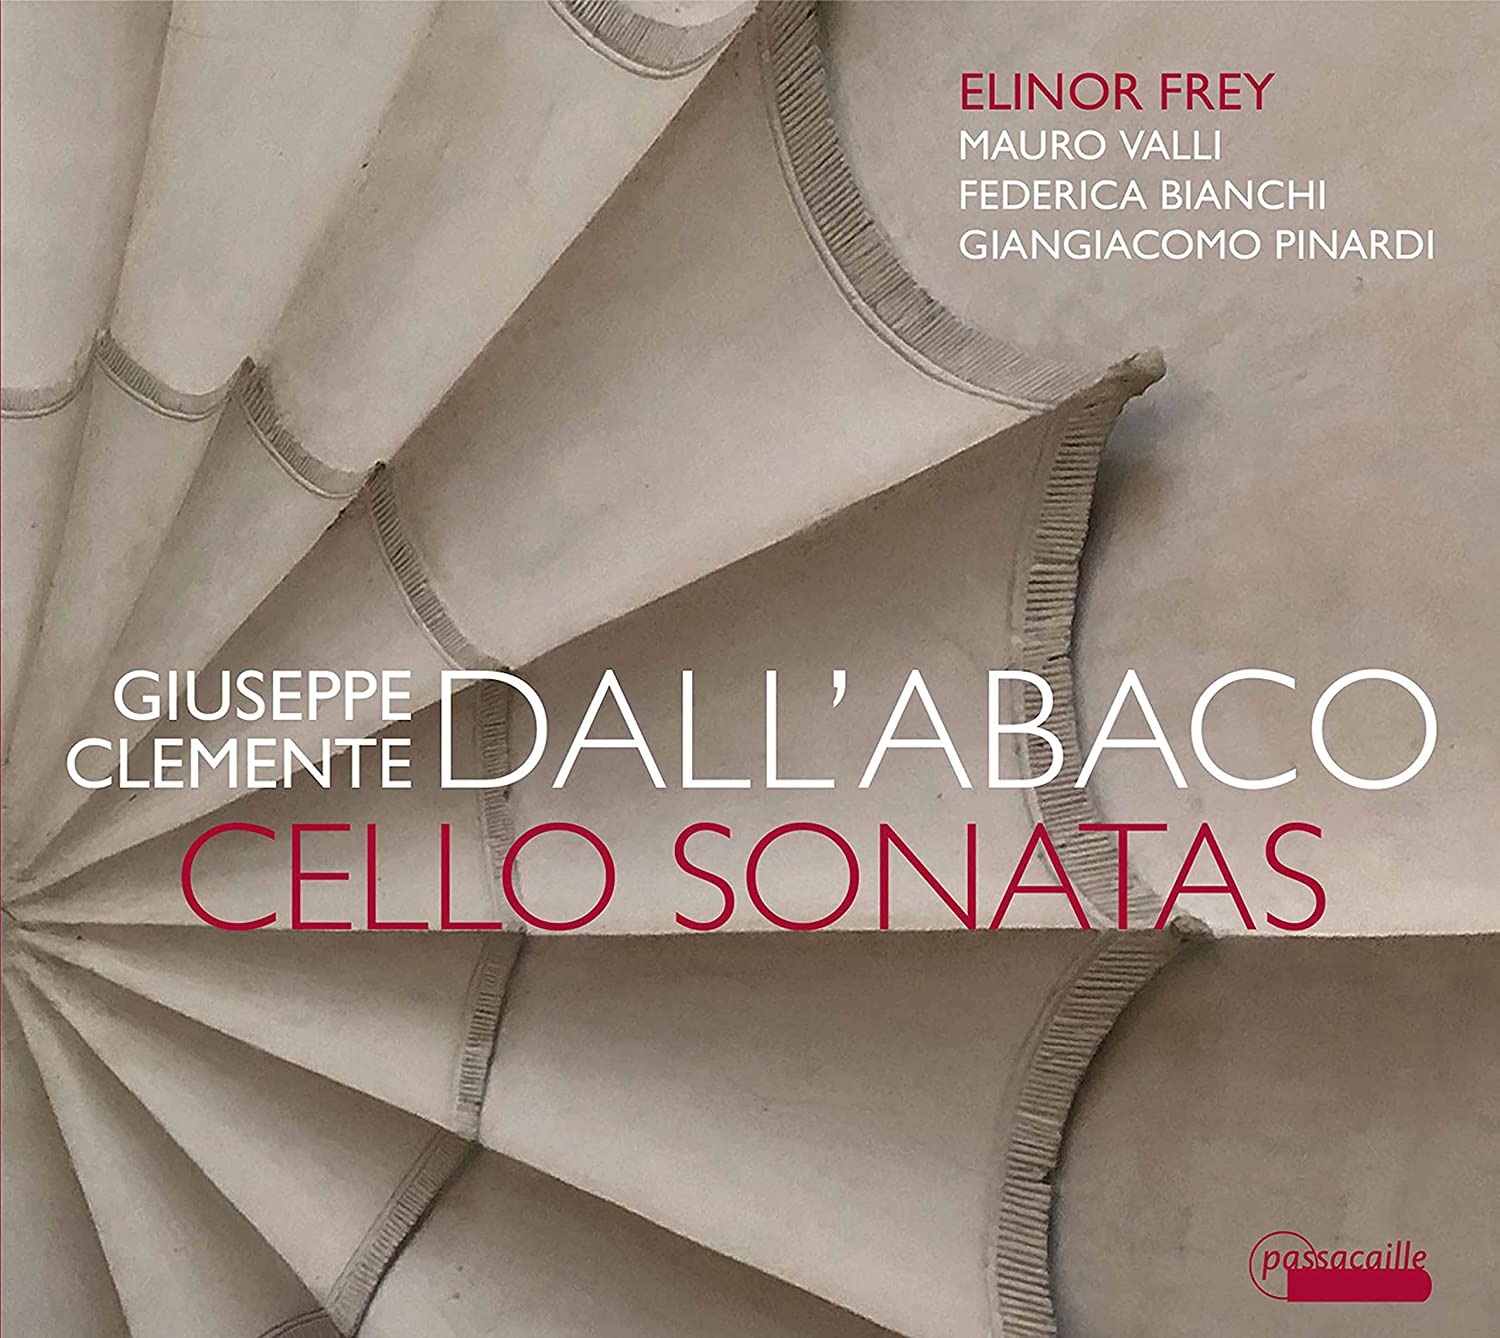 Elinor Frey plays cello sonatas by G C Dall'Abaco